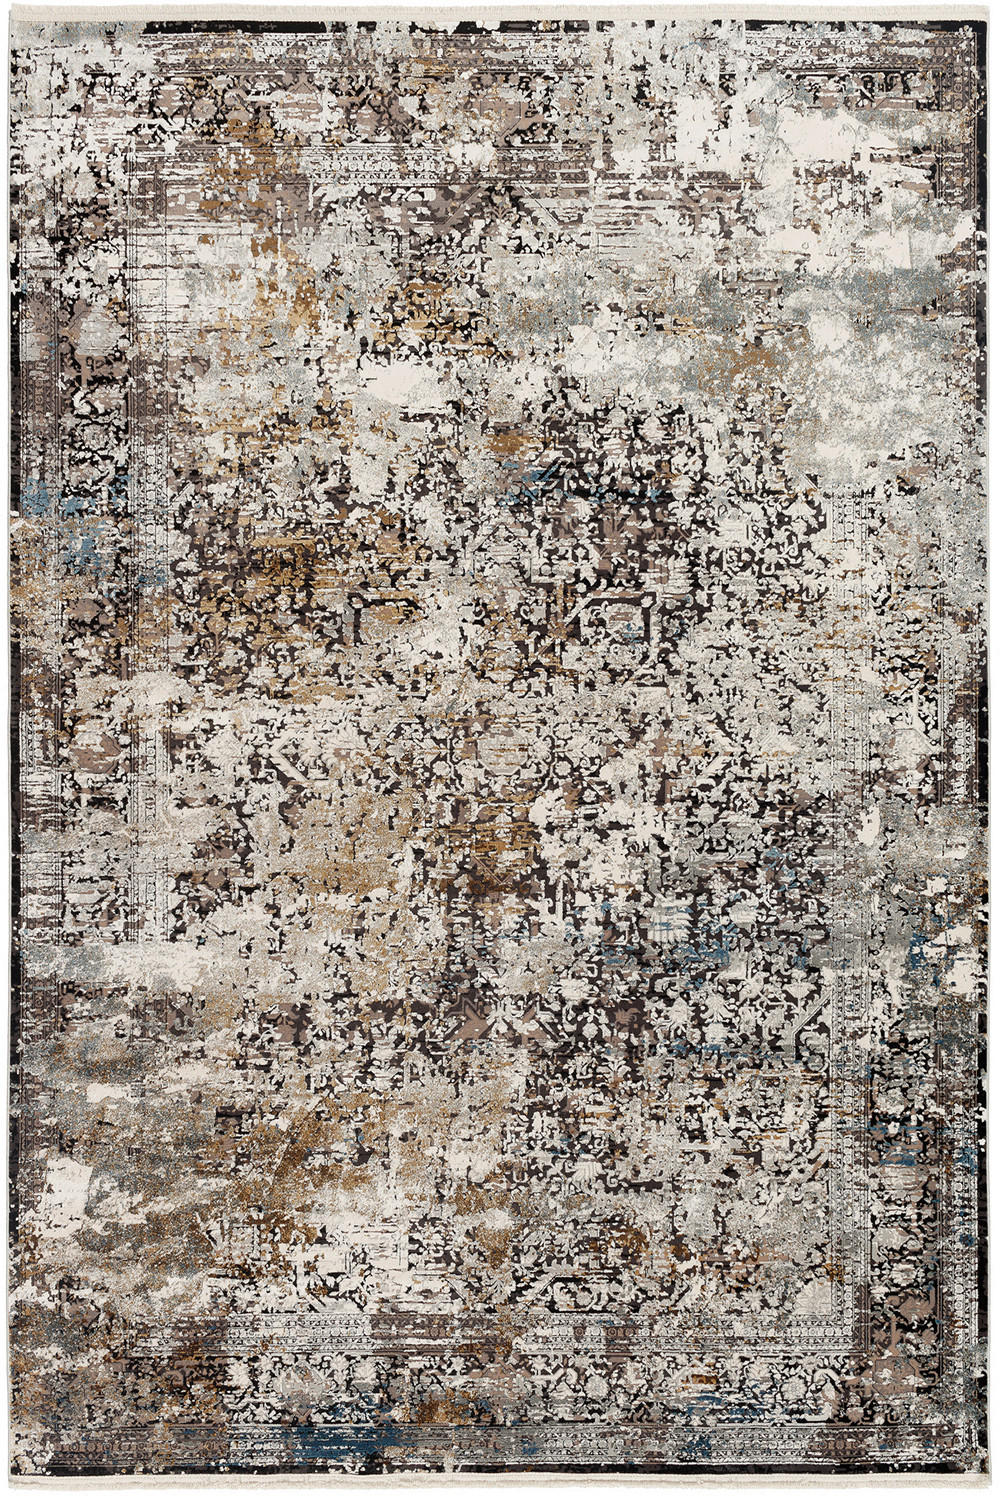 WEBTEPPICH  67/130 cm  Grau, Multicolor   - Multicolor/Grau, Design, Textil (67/130cm) - Dieter Knoll